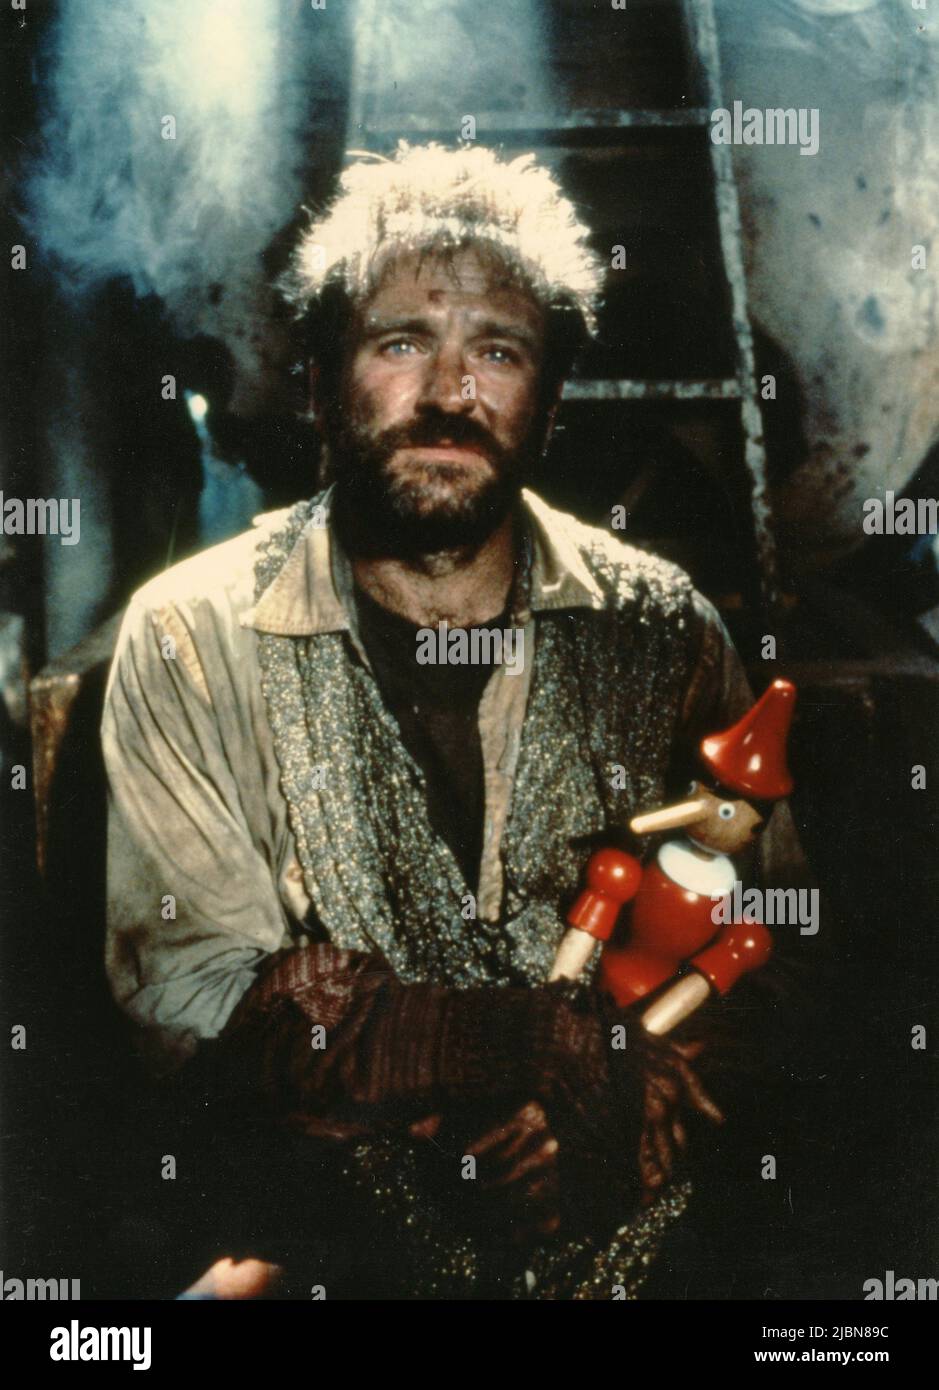 L'acteur américain Robin Williams dans le film The Fisher King, USA 1991 Banque D'Images